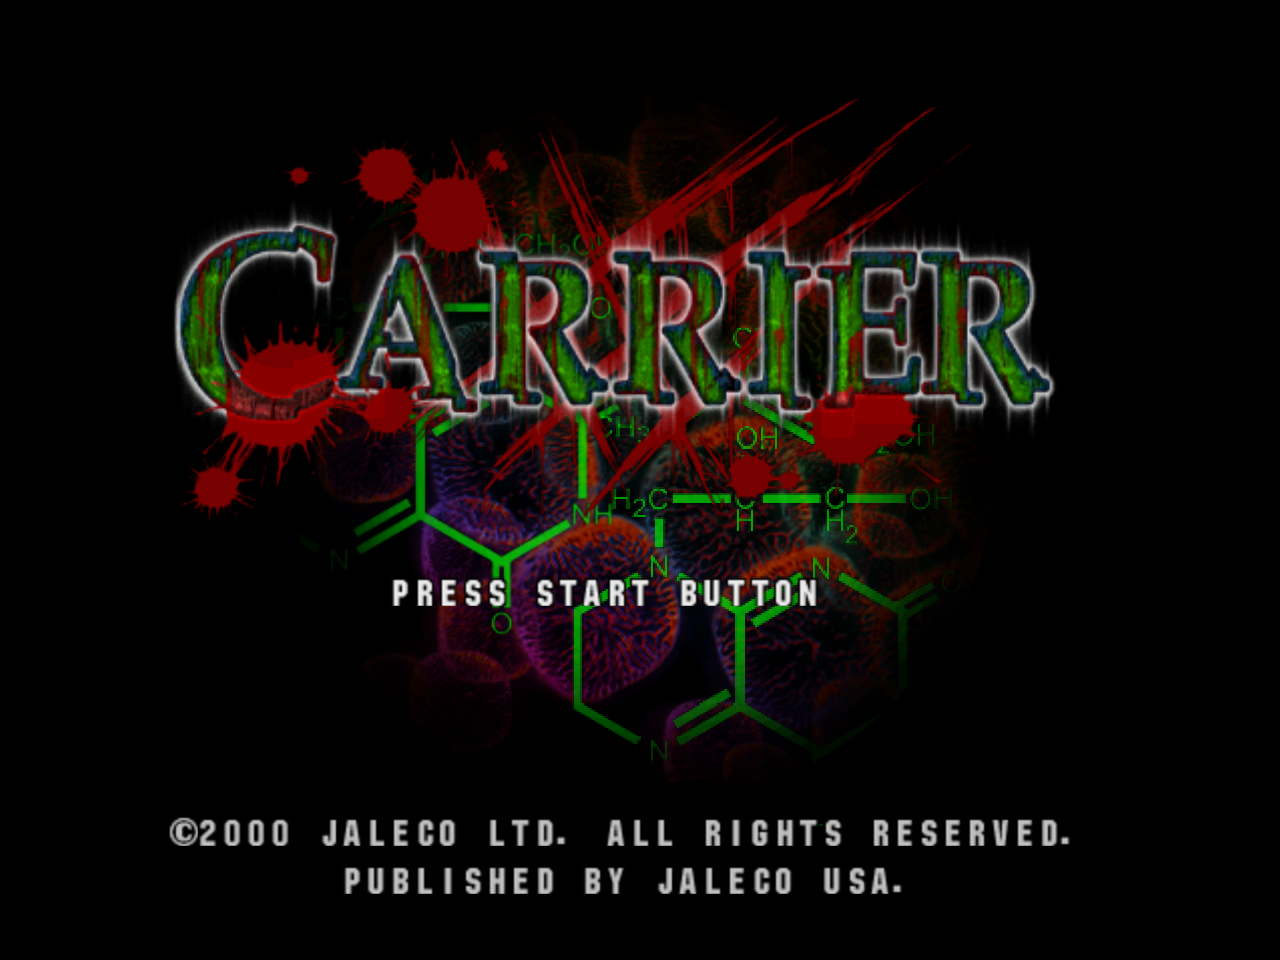 Carrier - Sega Dreamcast Game